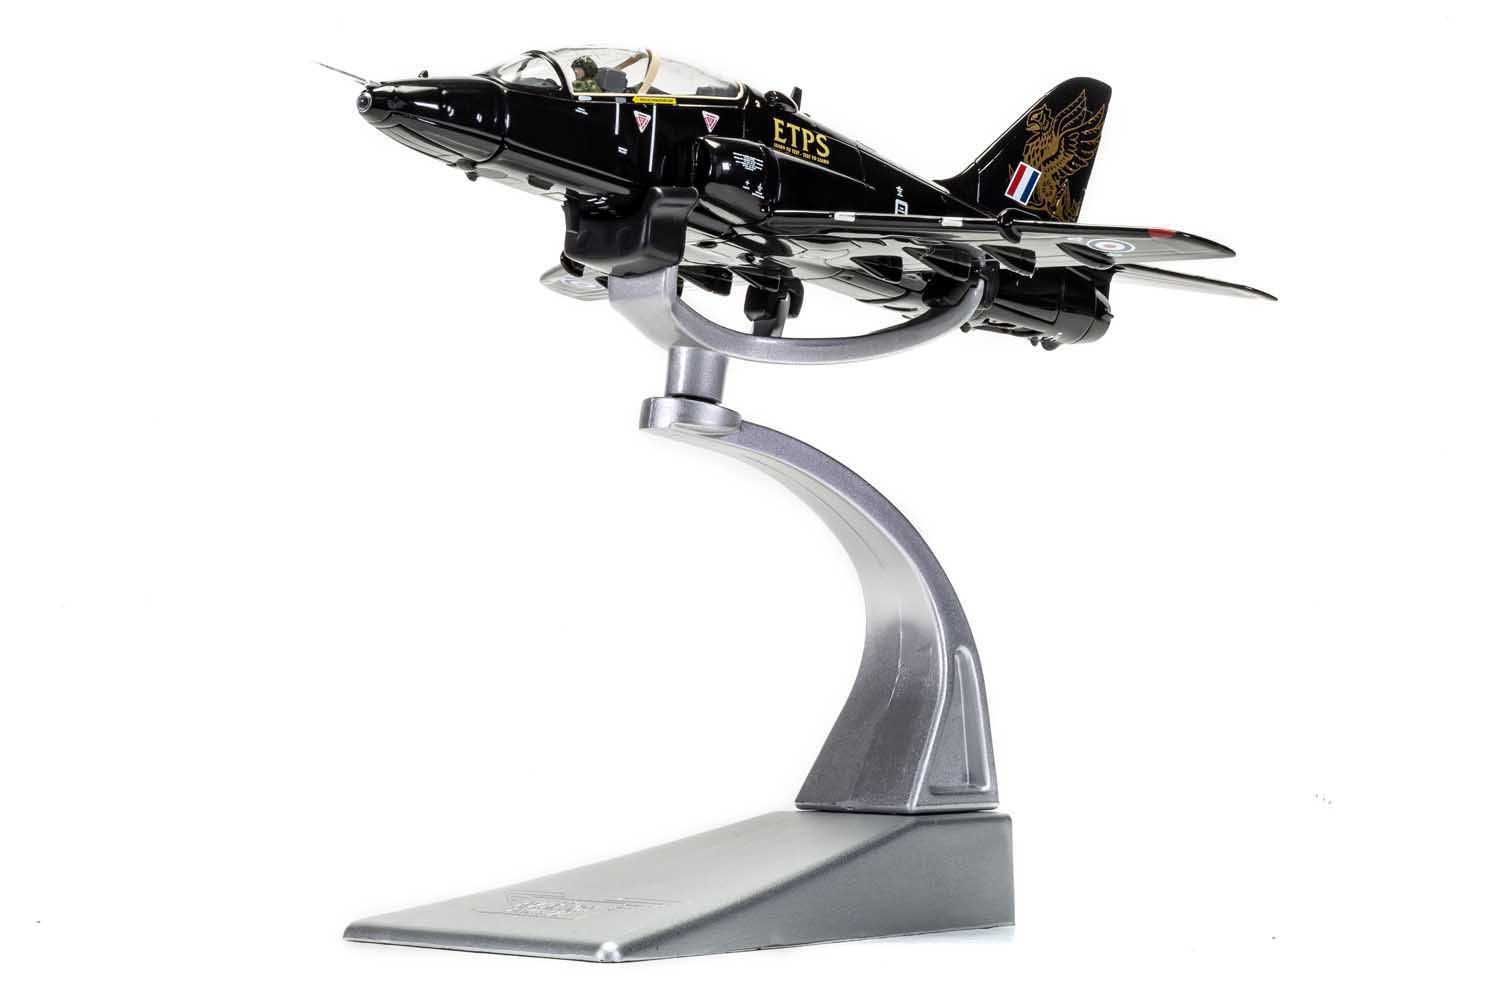 AA36016 Corgi | BAE Hawk XX154 ETPS - diecast model kit